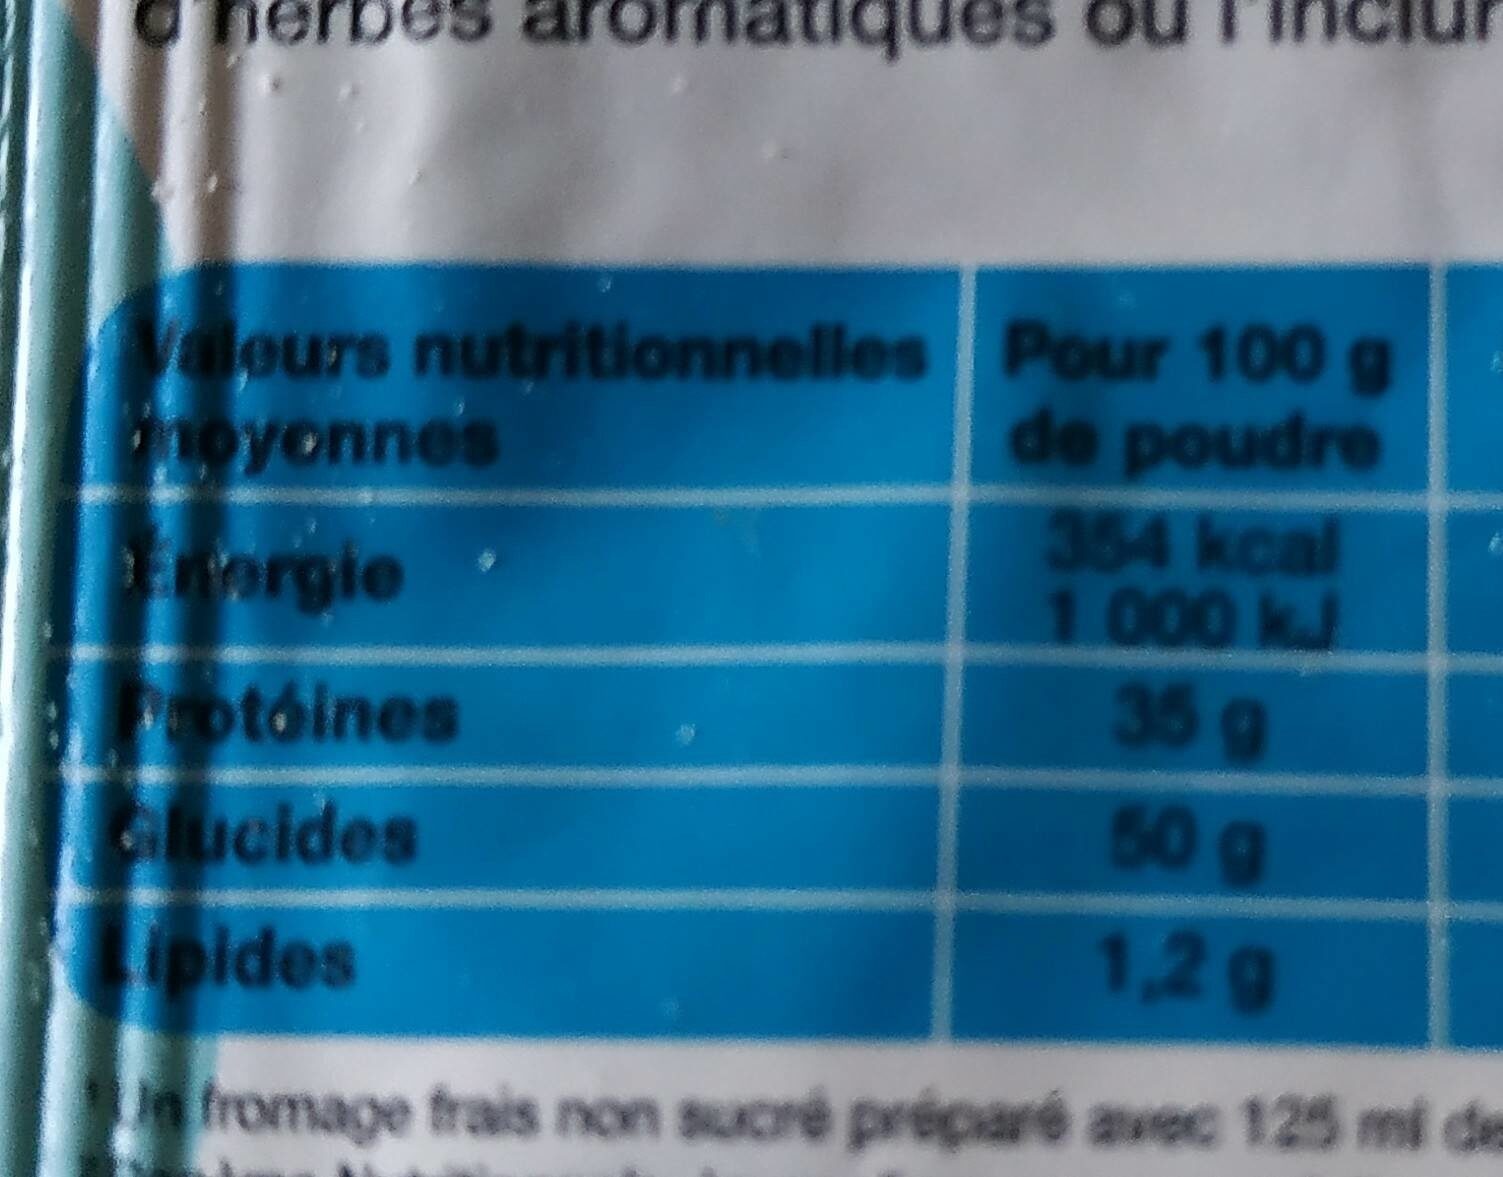 Bio plaisance préparation fromages frais en faisselle - Nutrition facts - fr